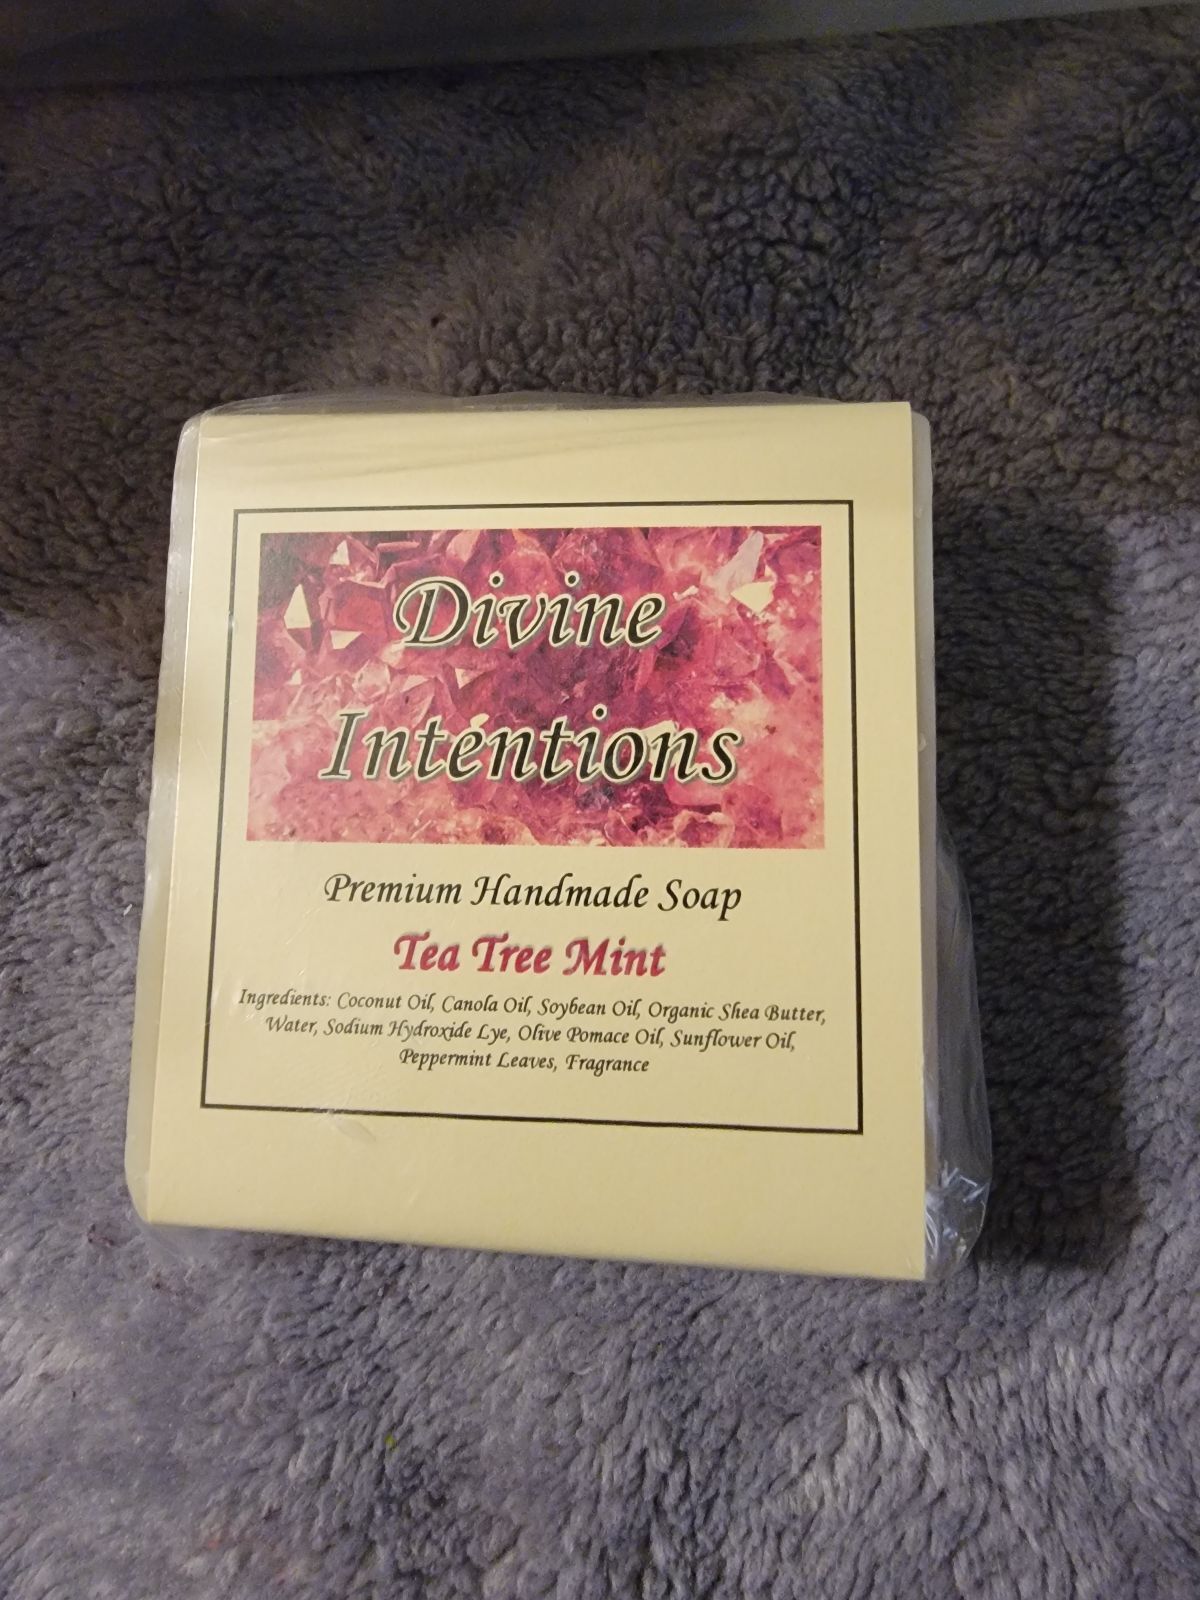 Tea Tree Mint